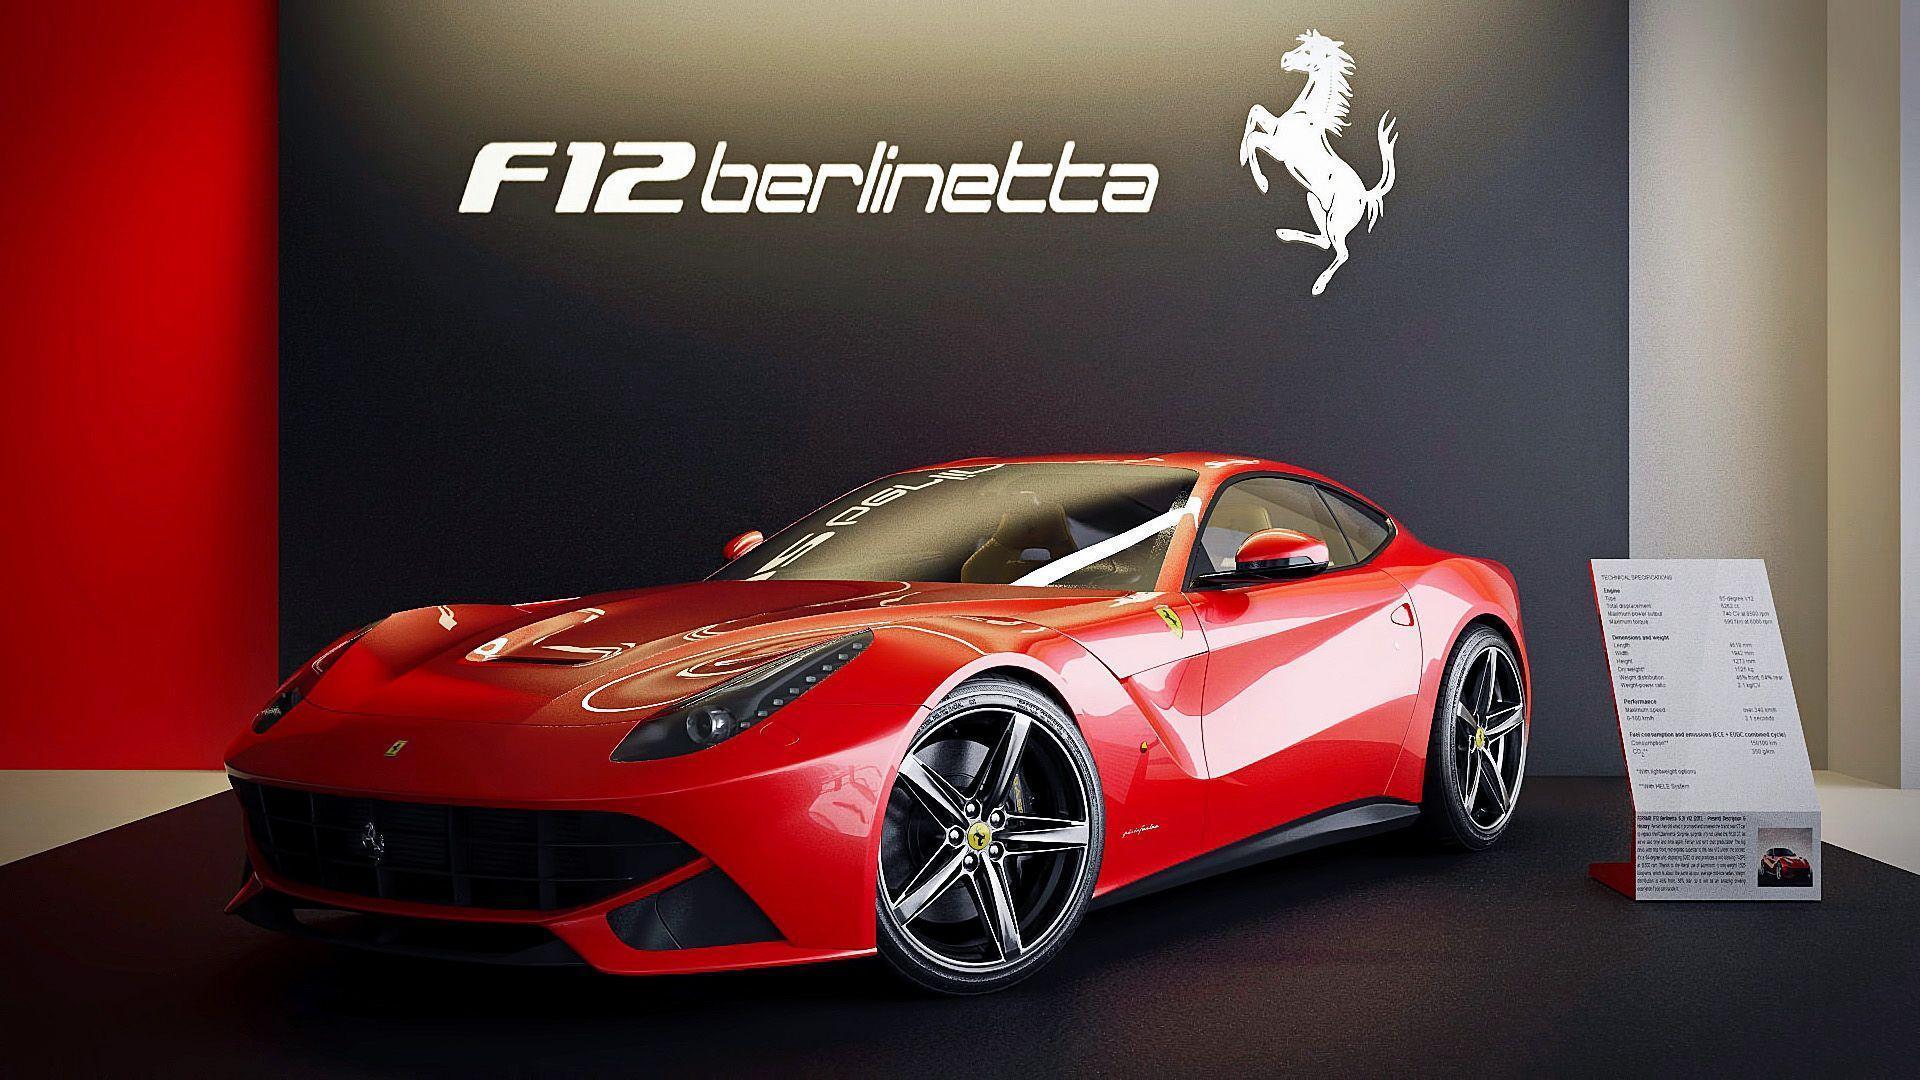 Cool Ferrari F12 Berlinetta Wallpaper